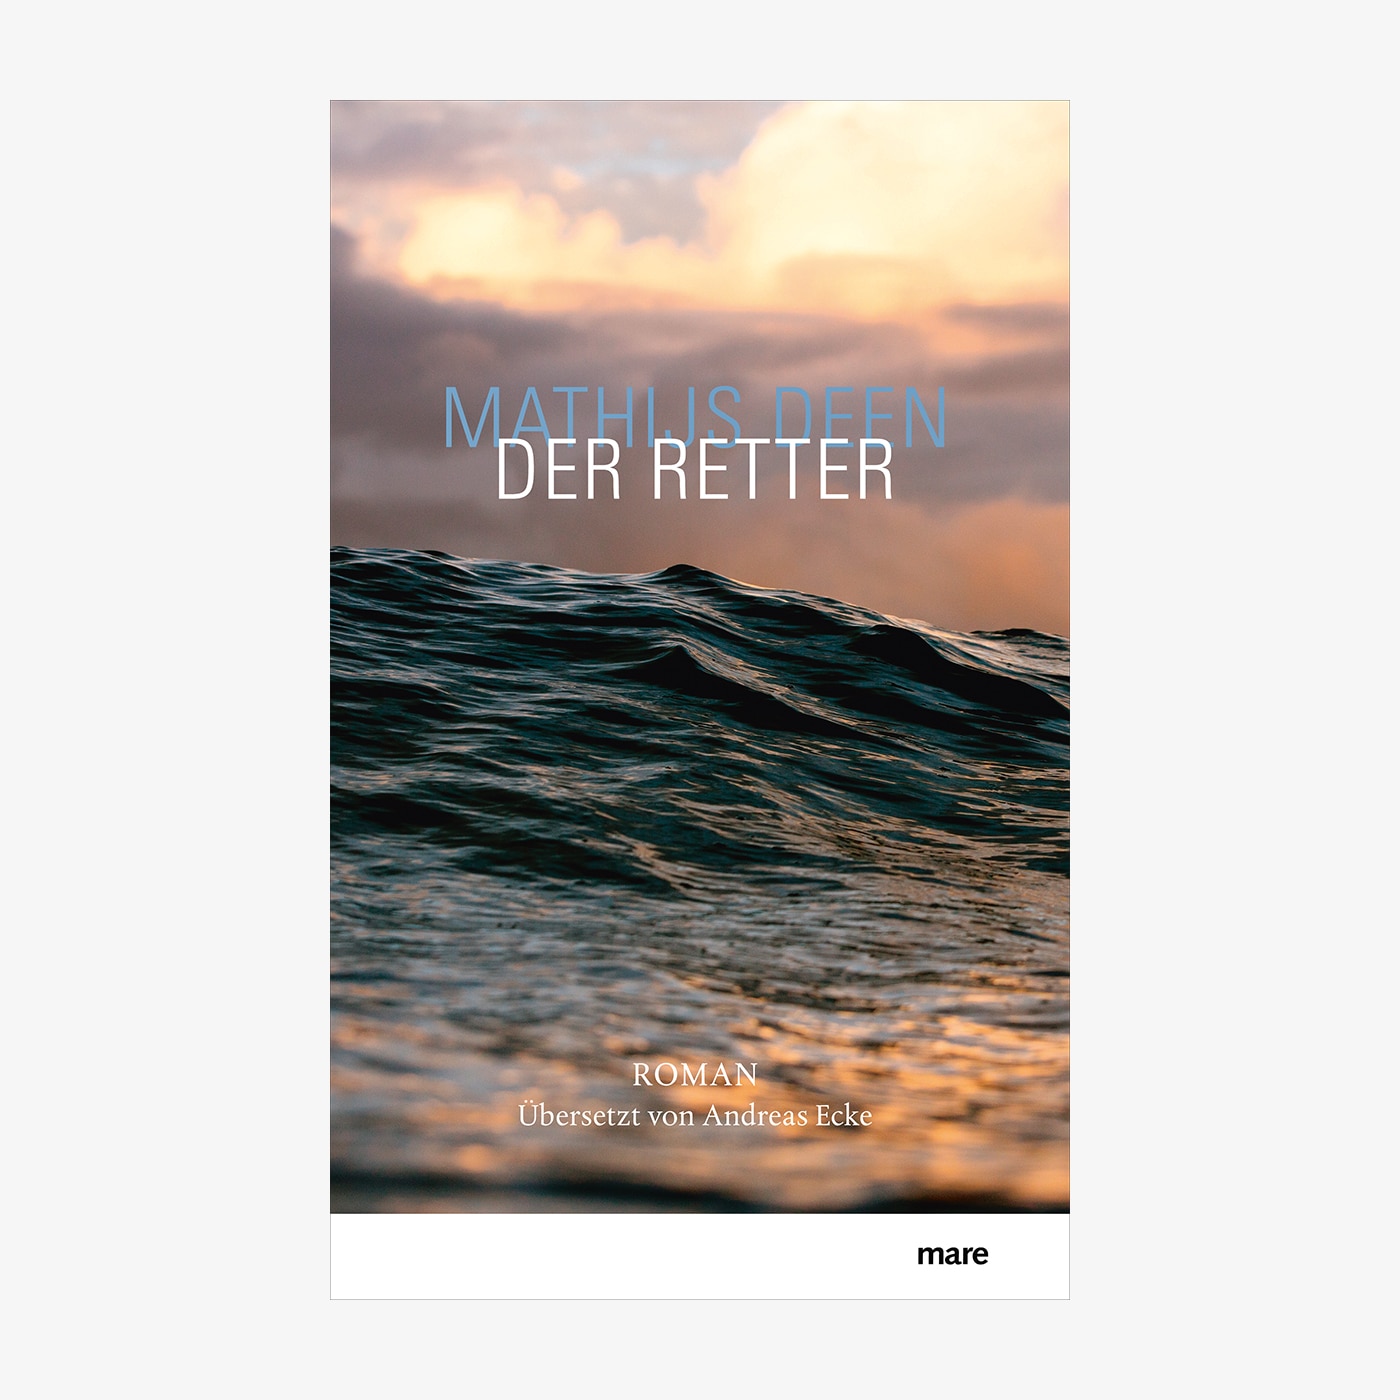 Neue Bücher: "Der Retter" von Mathijs Deen